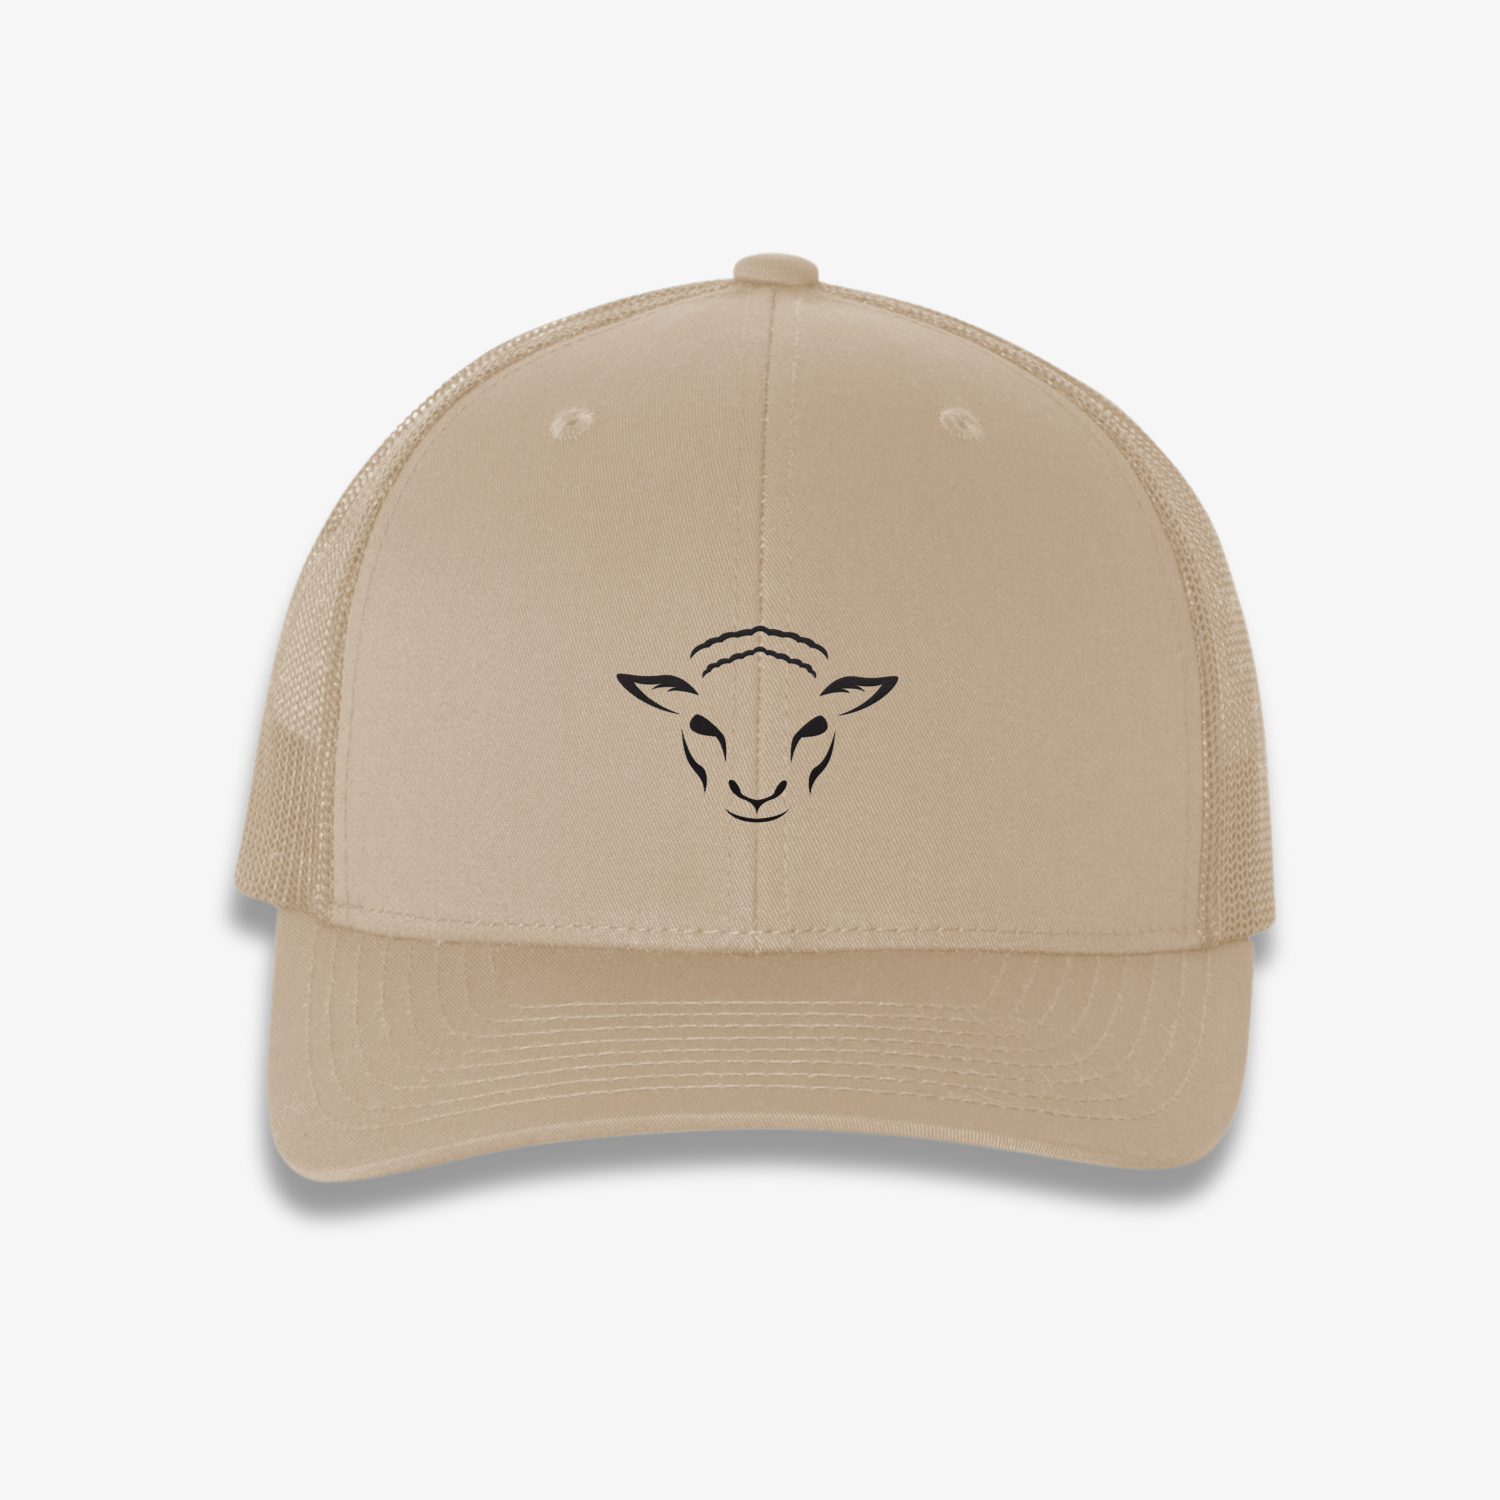 Risen Lamb Trucker Hat